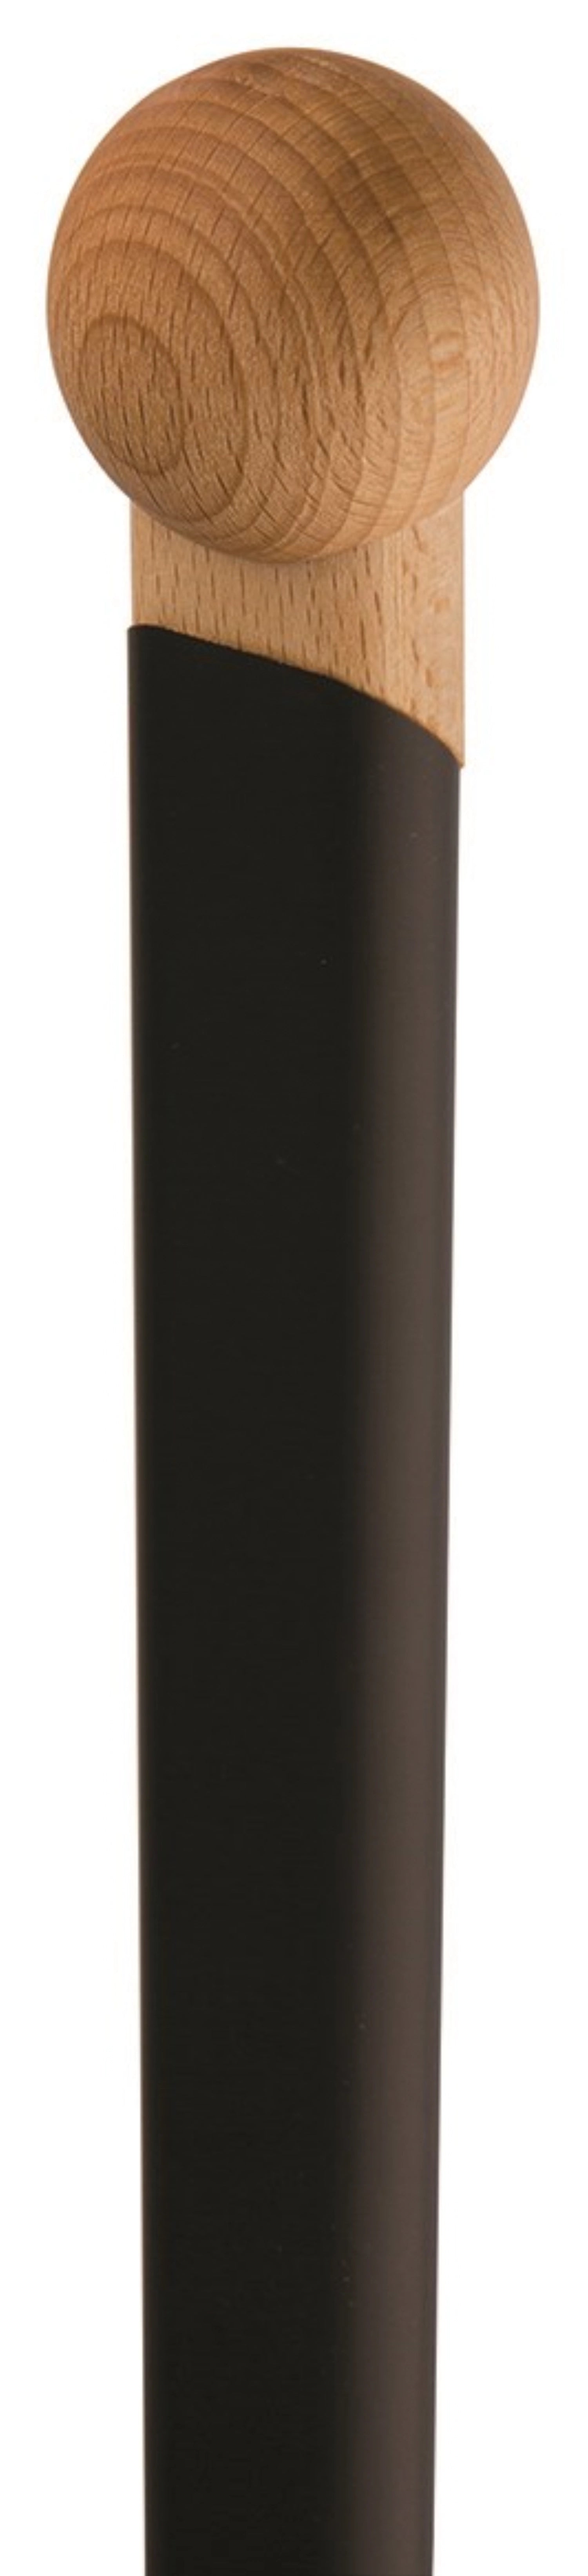 Pizzaschieber 33x33cm mit schwarzem Griff Länge total 187cm - KAQTU Design